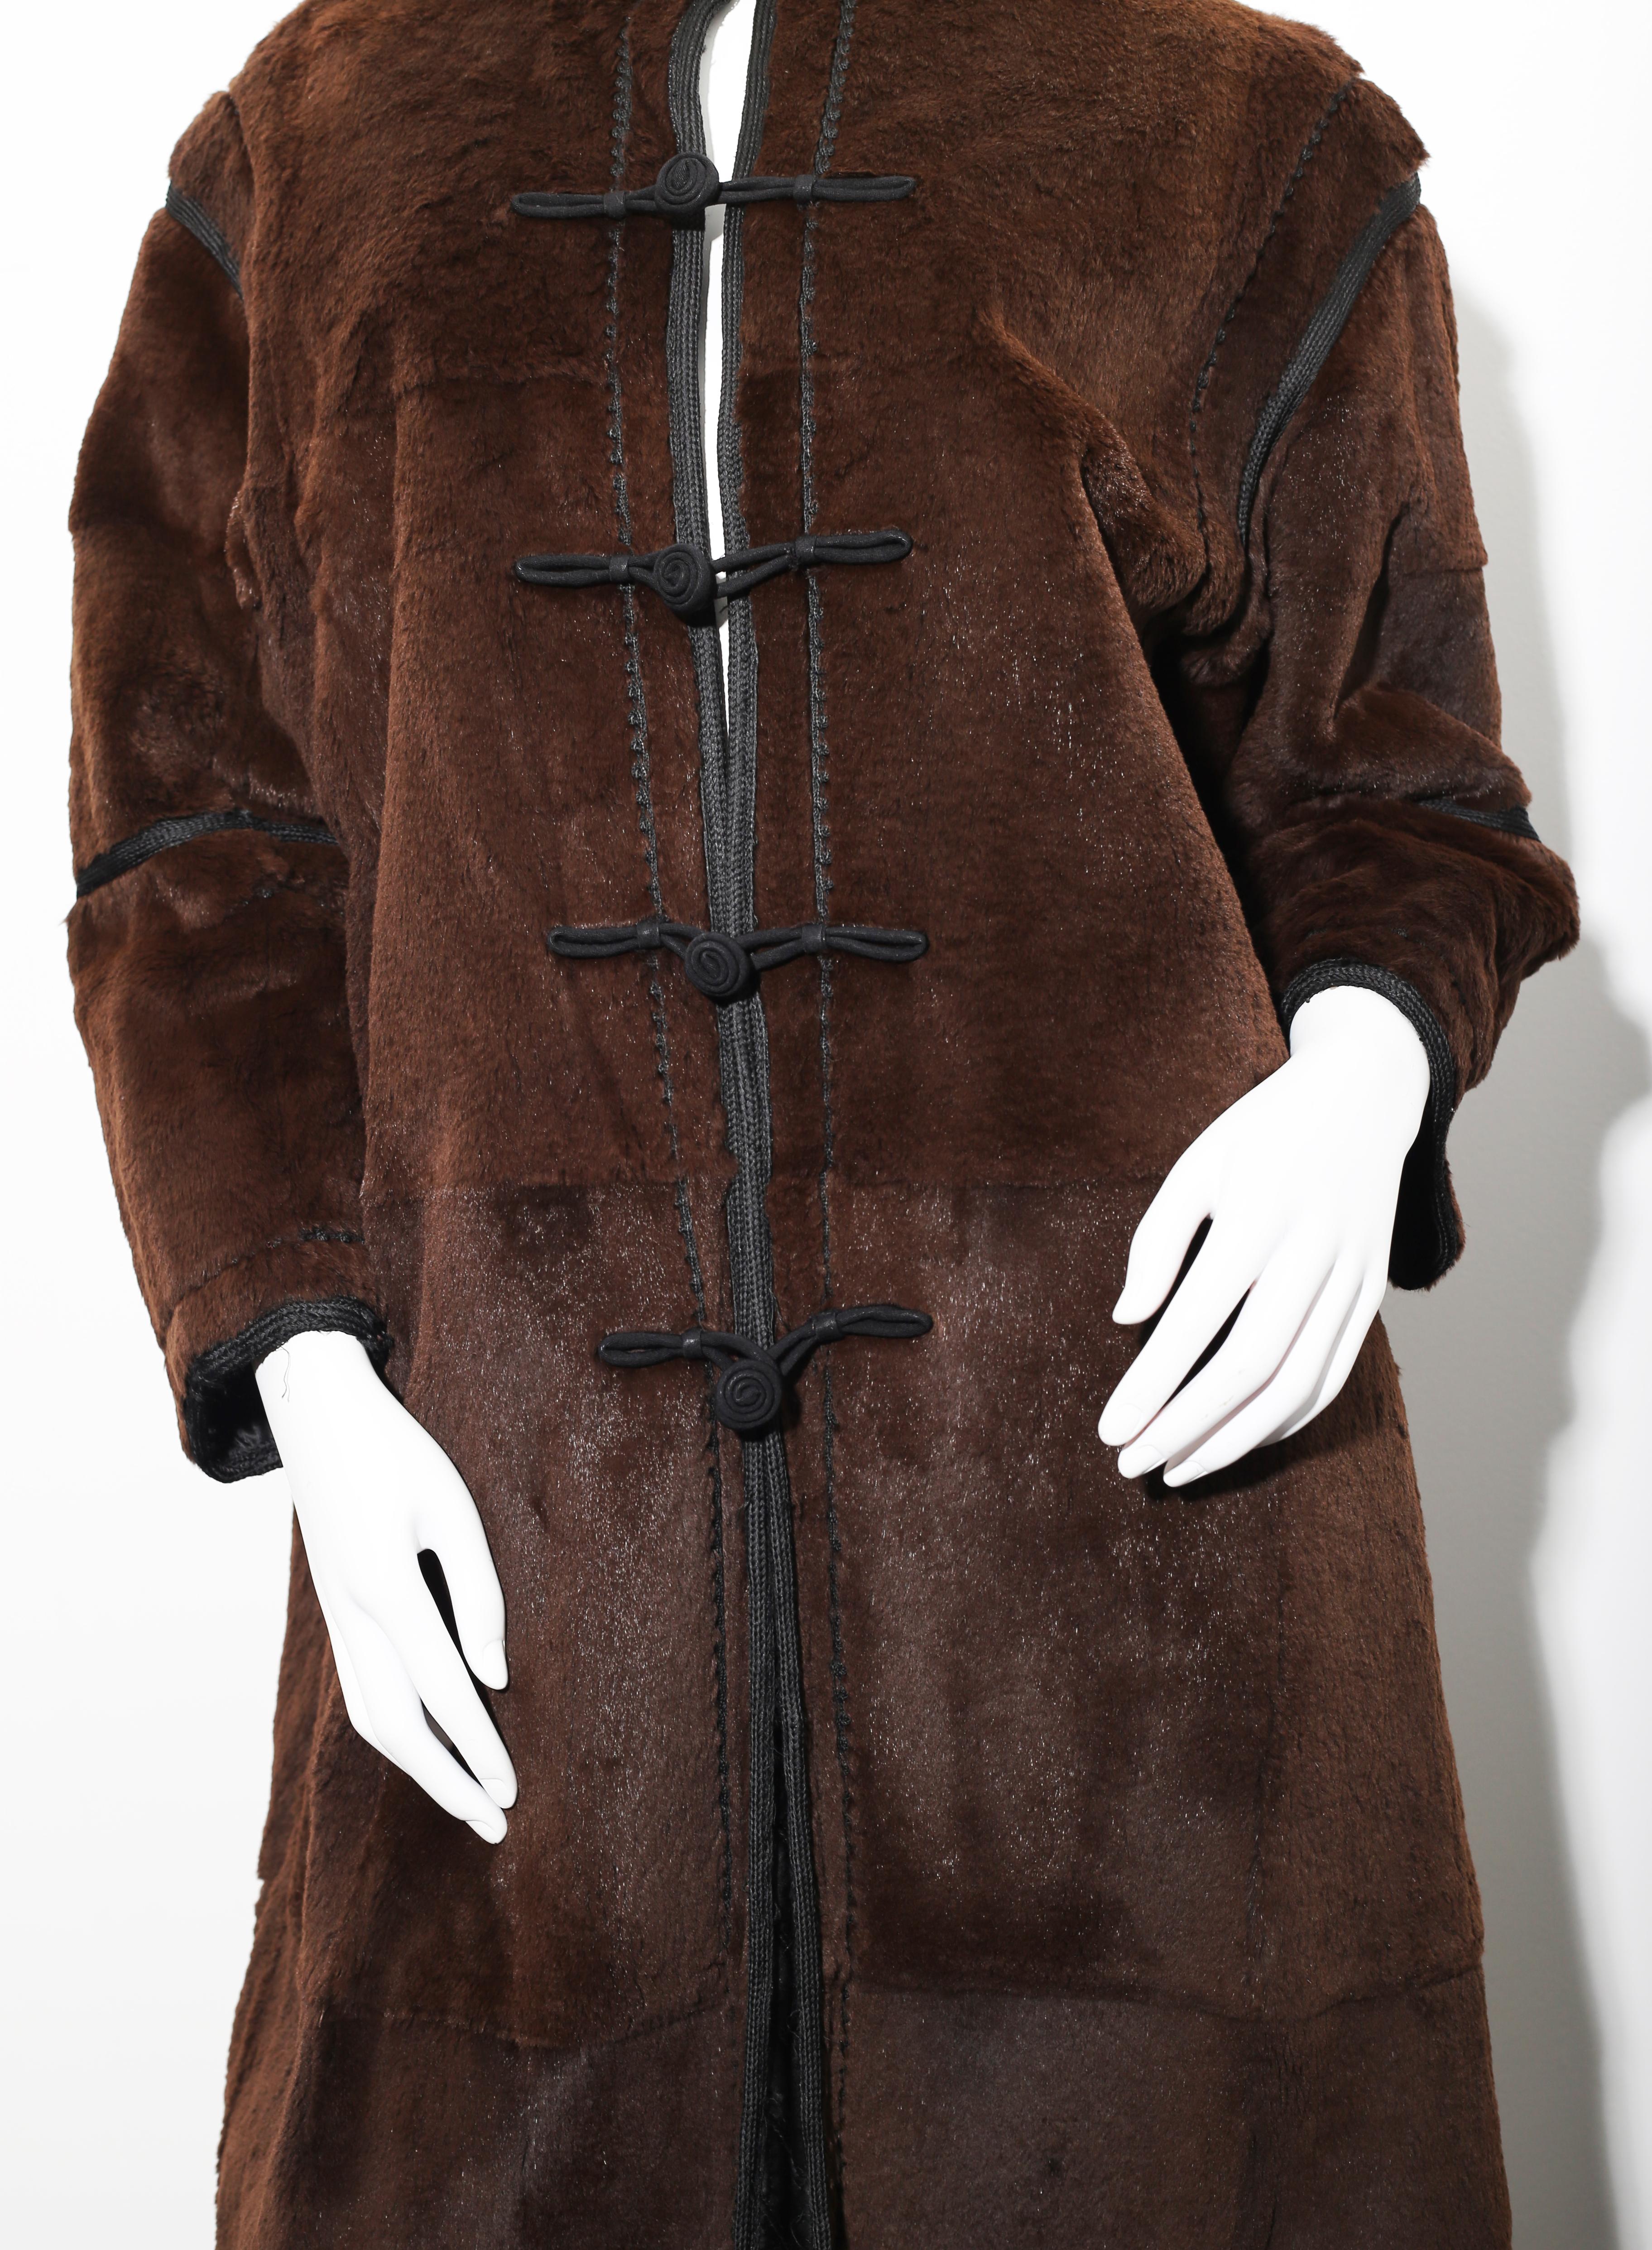 Armani Oriental Style Manteau en cuir de vison brun avec garnitures en soie noire
Taille : 42 FR / 46 IT/ 10 US / 14 UK / EU L
Condition : MINT 
MESURES DU MANTEAU :
LENGTH 105cm 41,33